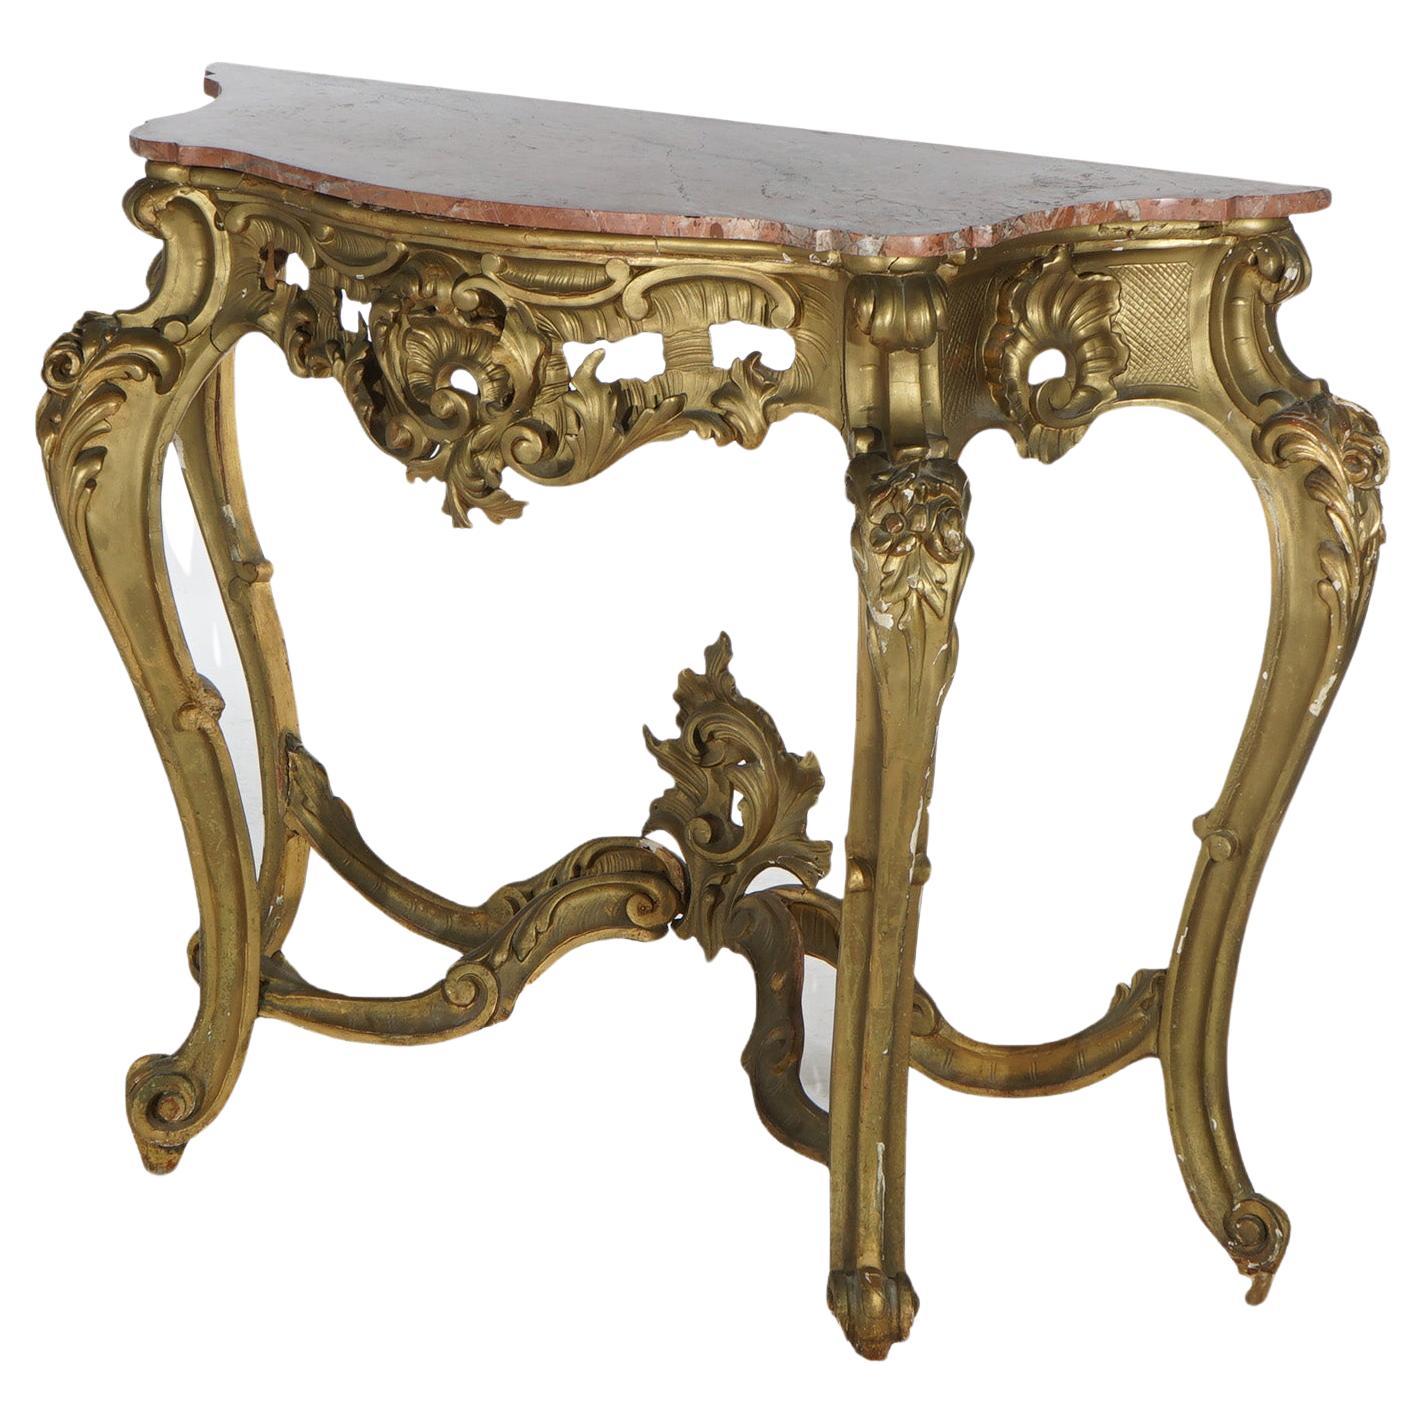 Ancienne table console de style rococo français en bois doré et plateau en marbre, vers 1890